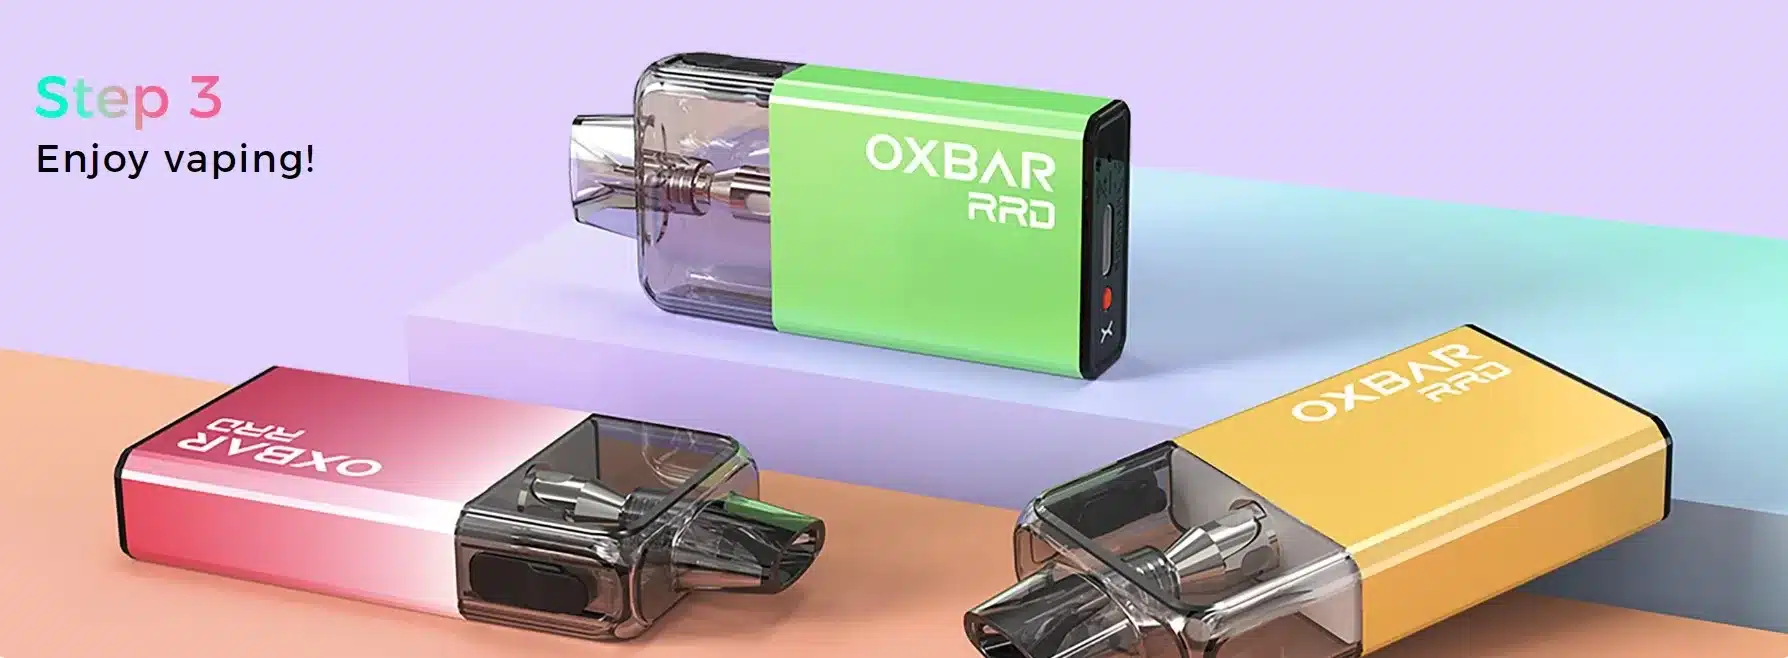 OXBAR RRD Disposable Pod Vape Kit how to use